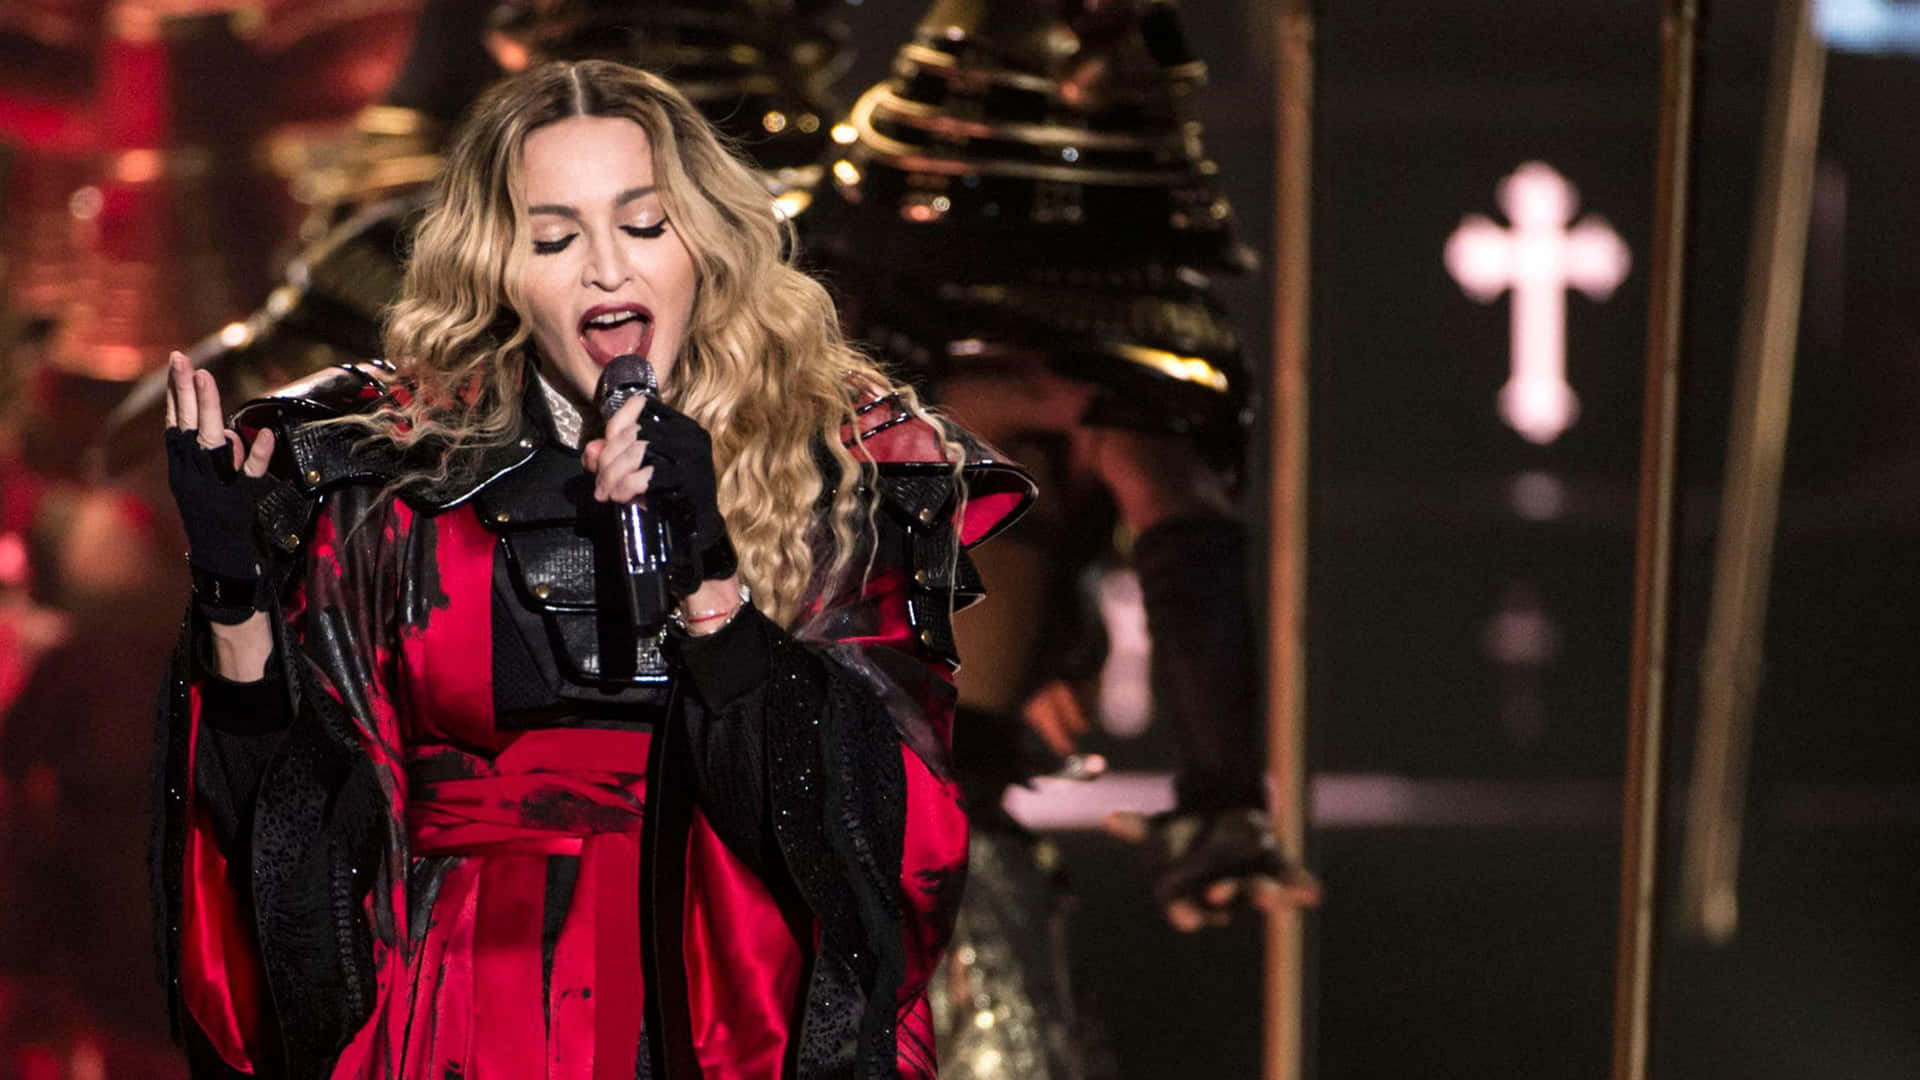 Madonnadominiert Seit Über 40 Jahren Die Musikszene.